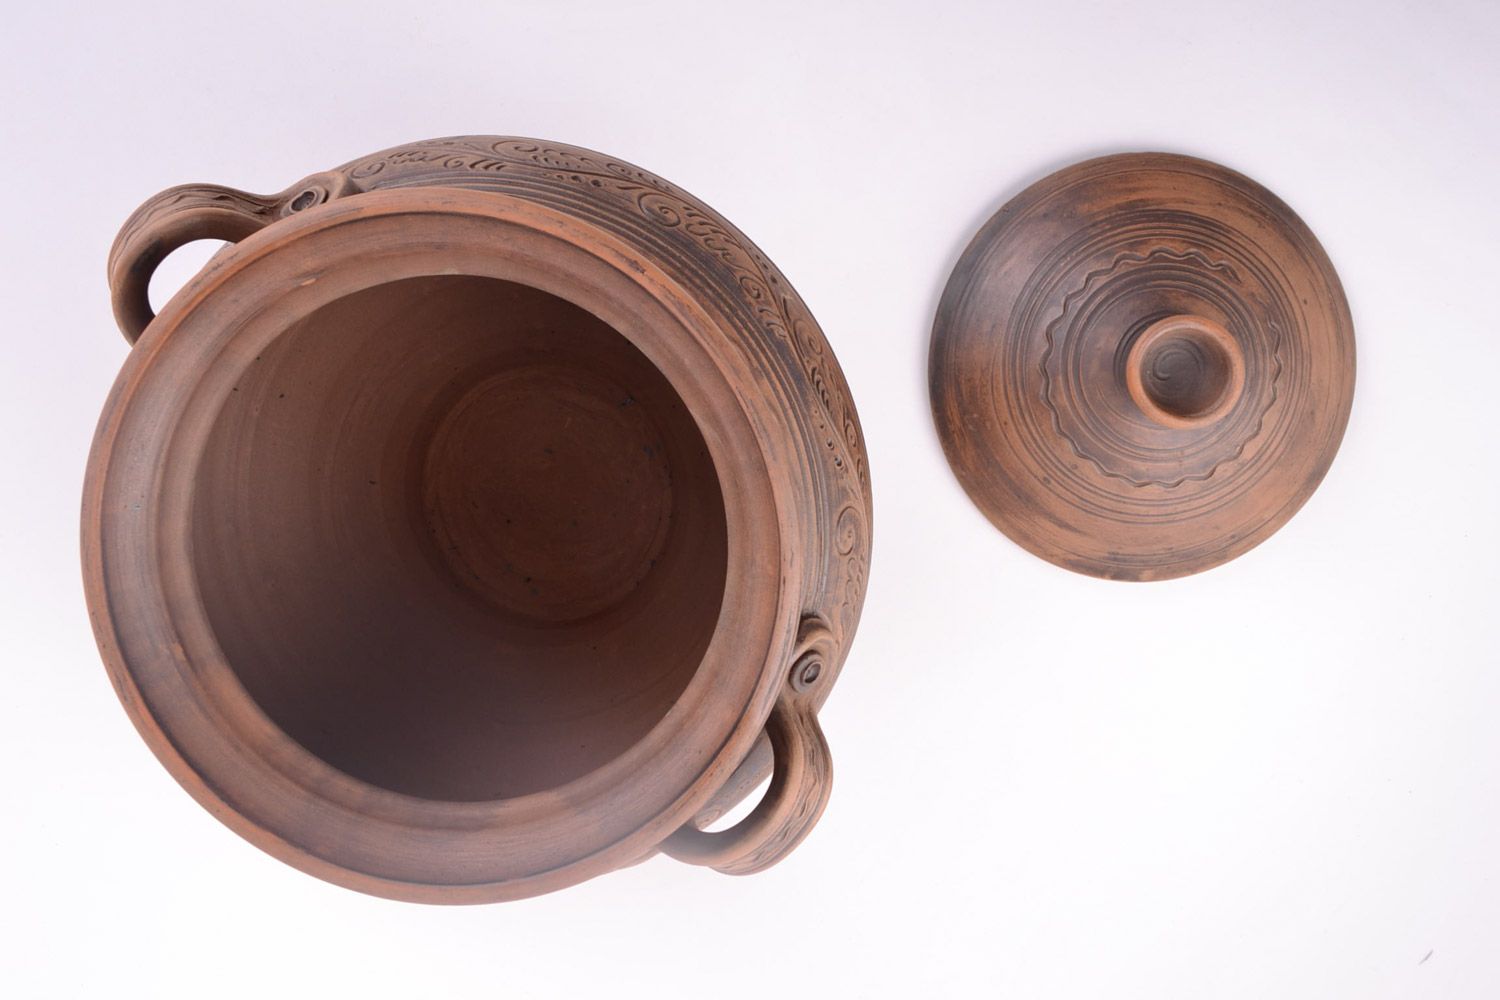 Großer handmade Keramik Topf mit Deckel Handarbeit 4 l in Braun für Backen  foto 3